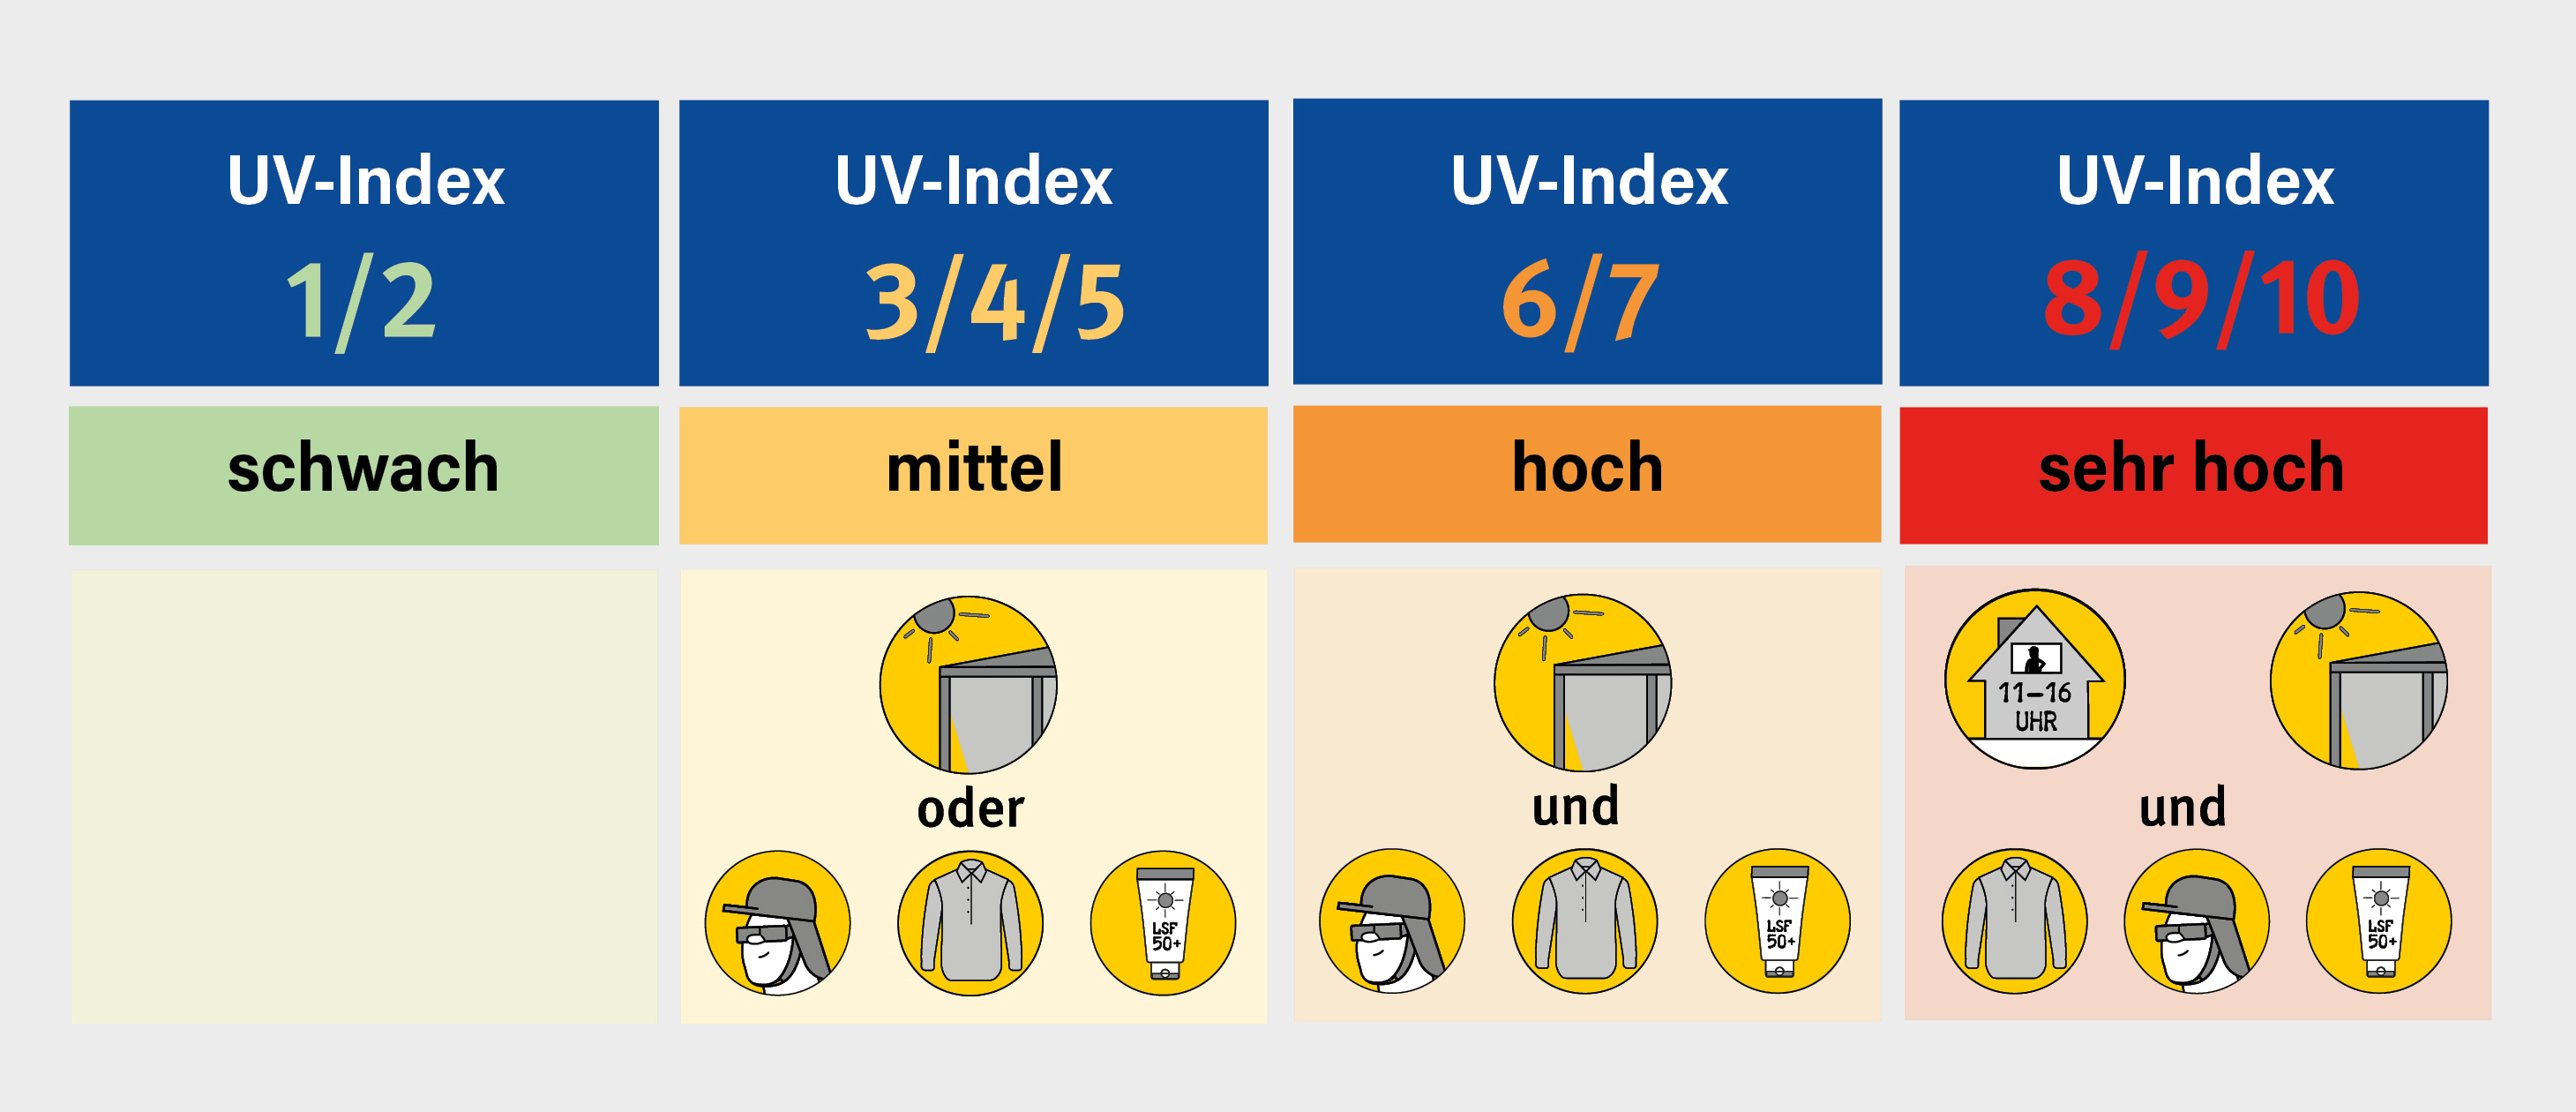 Grafik mit den unterschiedlichen Stufen des UV-Index und Abbildungen zu geeigneten Schutzmaßnahmen.